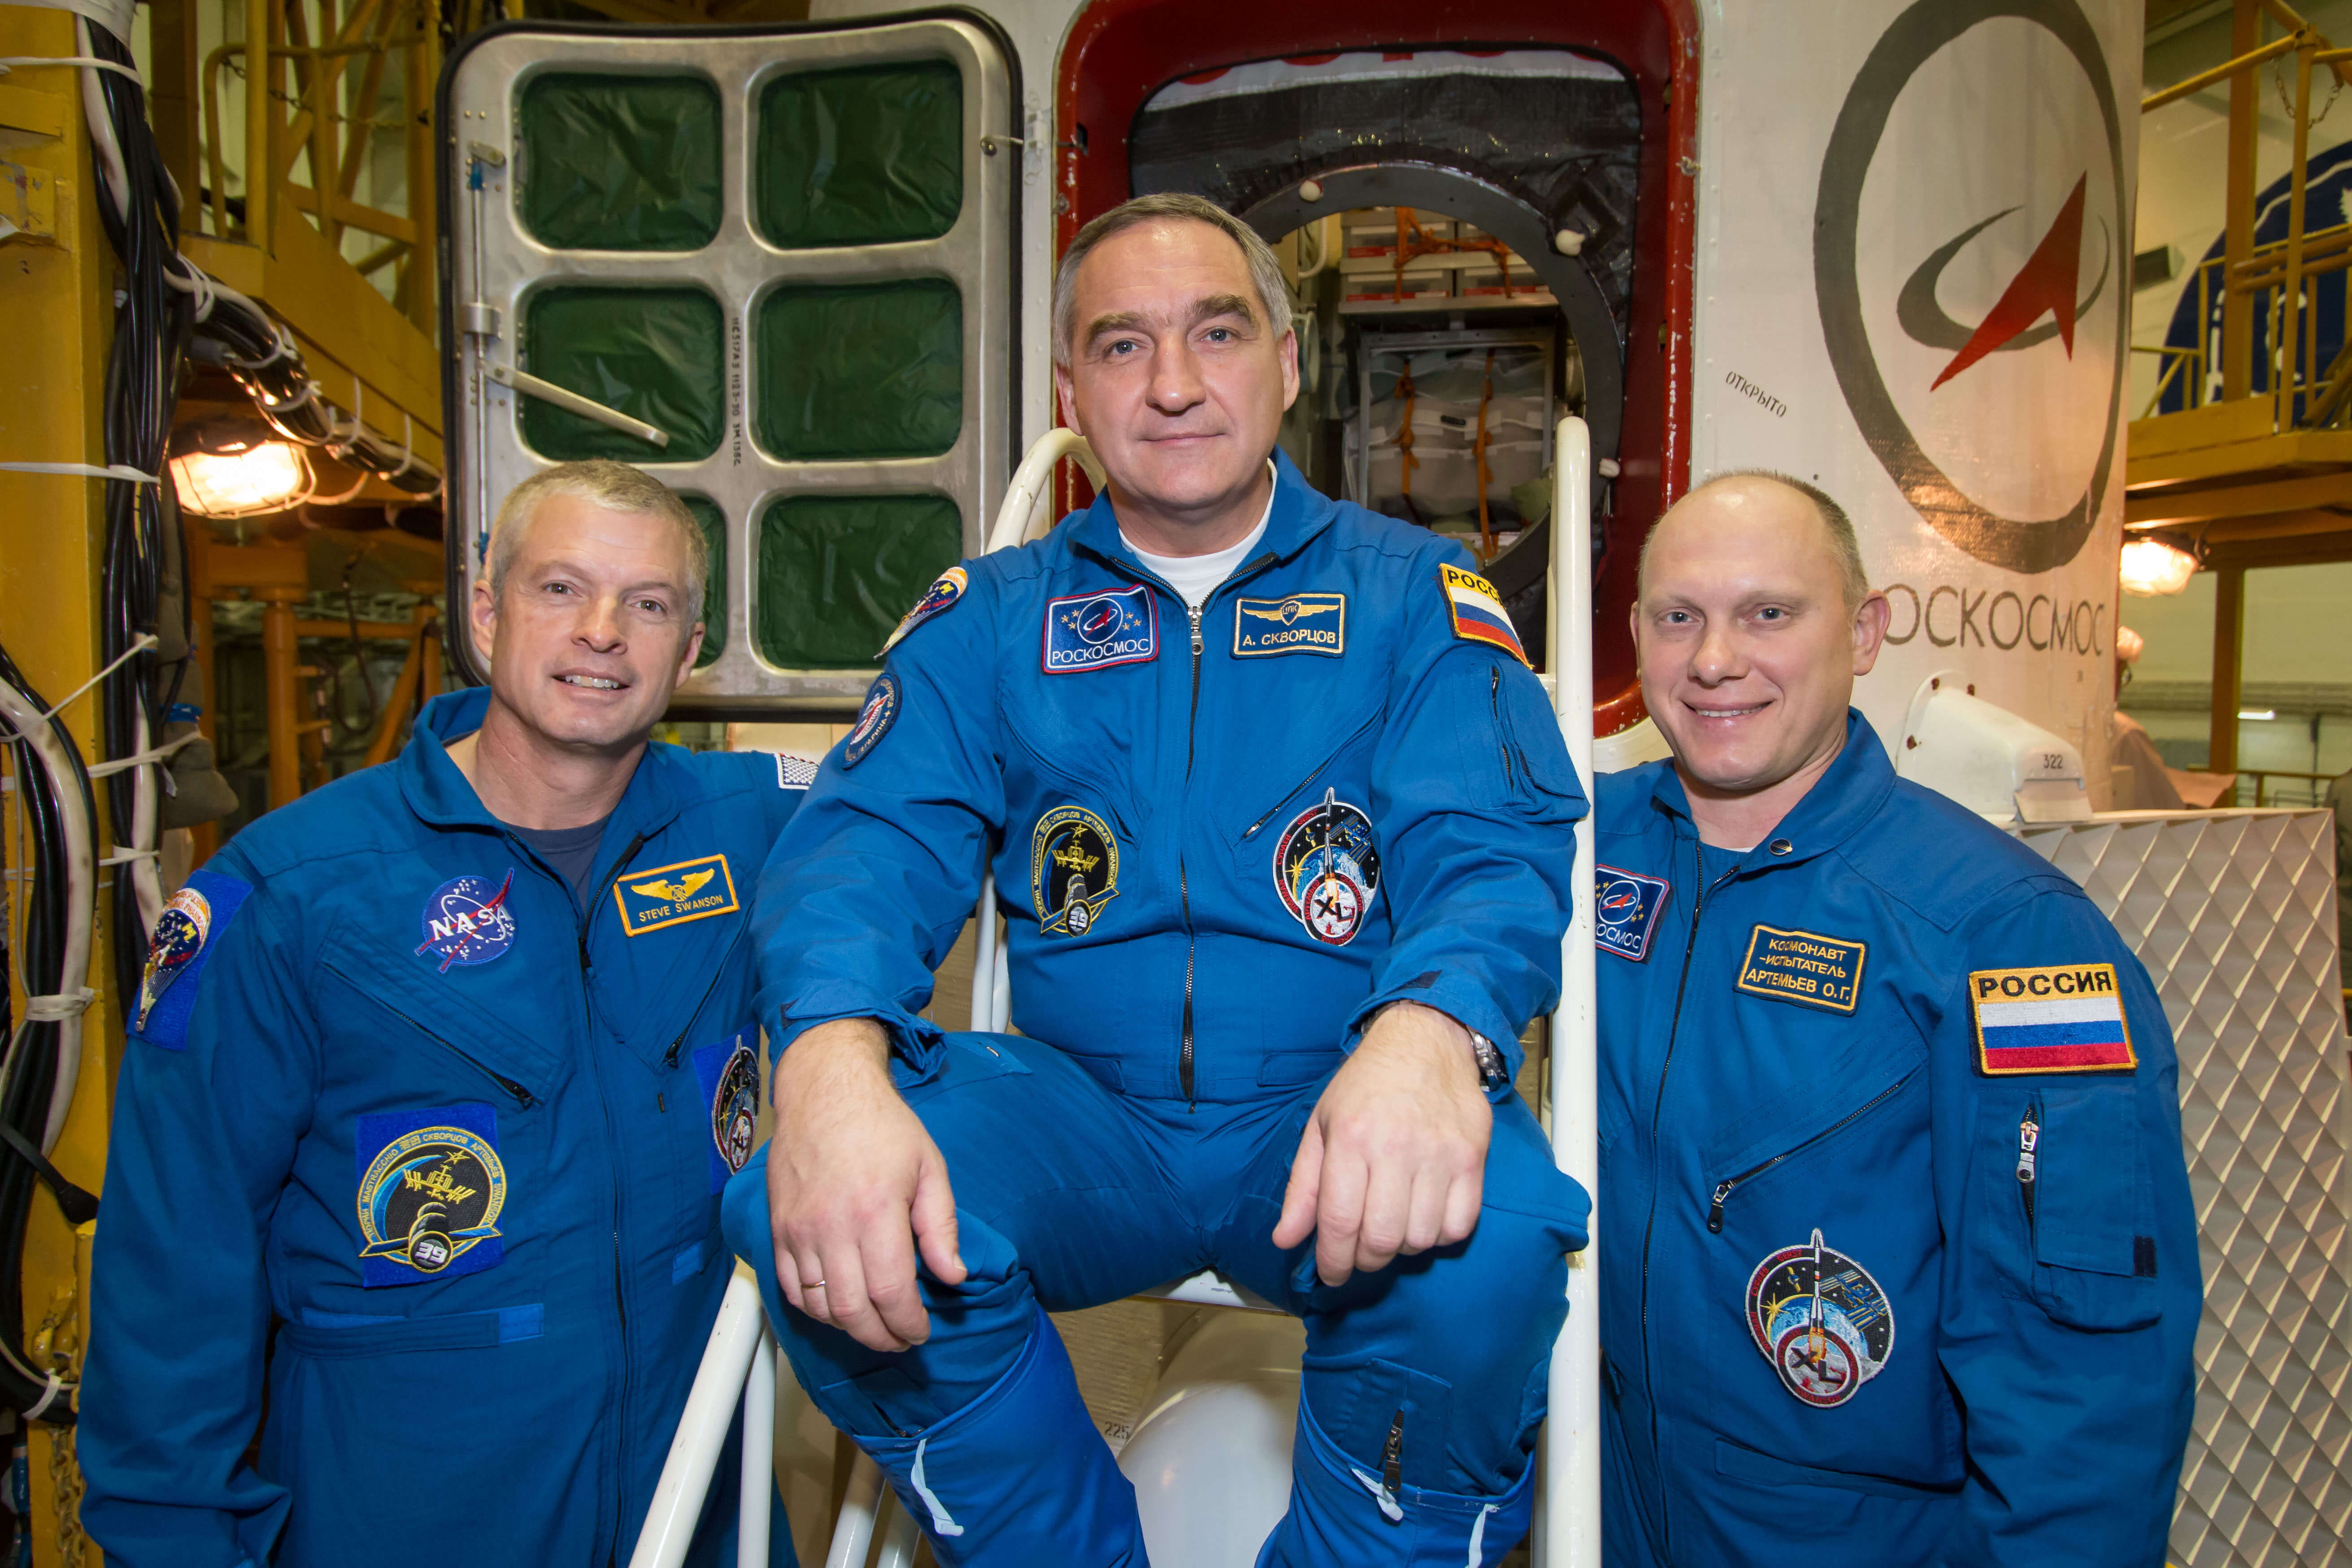 במרכז האינטגרציה בקוסמודרום בייקונור בקרחסטן מתאמנים אסטרונאוט נאס"א סטיב סוונסון (משמאל), ועמיתיו הרוסים אלכסנדר דקבורטסטוב (במרכז) ואולג ארטמייב ליד החללית סויוז TMA-12M ב-21 במארס 2014 לקראת שיגורם ב-26 לחודש. צילום: נאס"א/ויקטור זלנטסוב